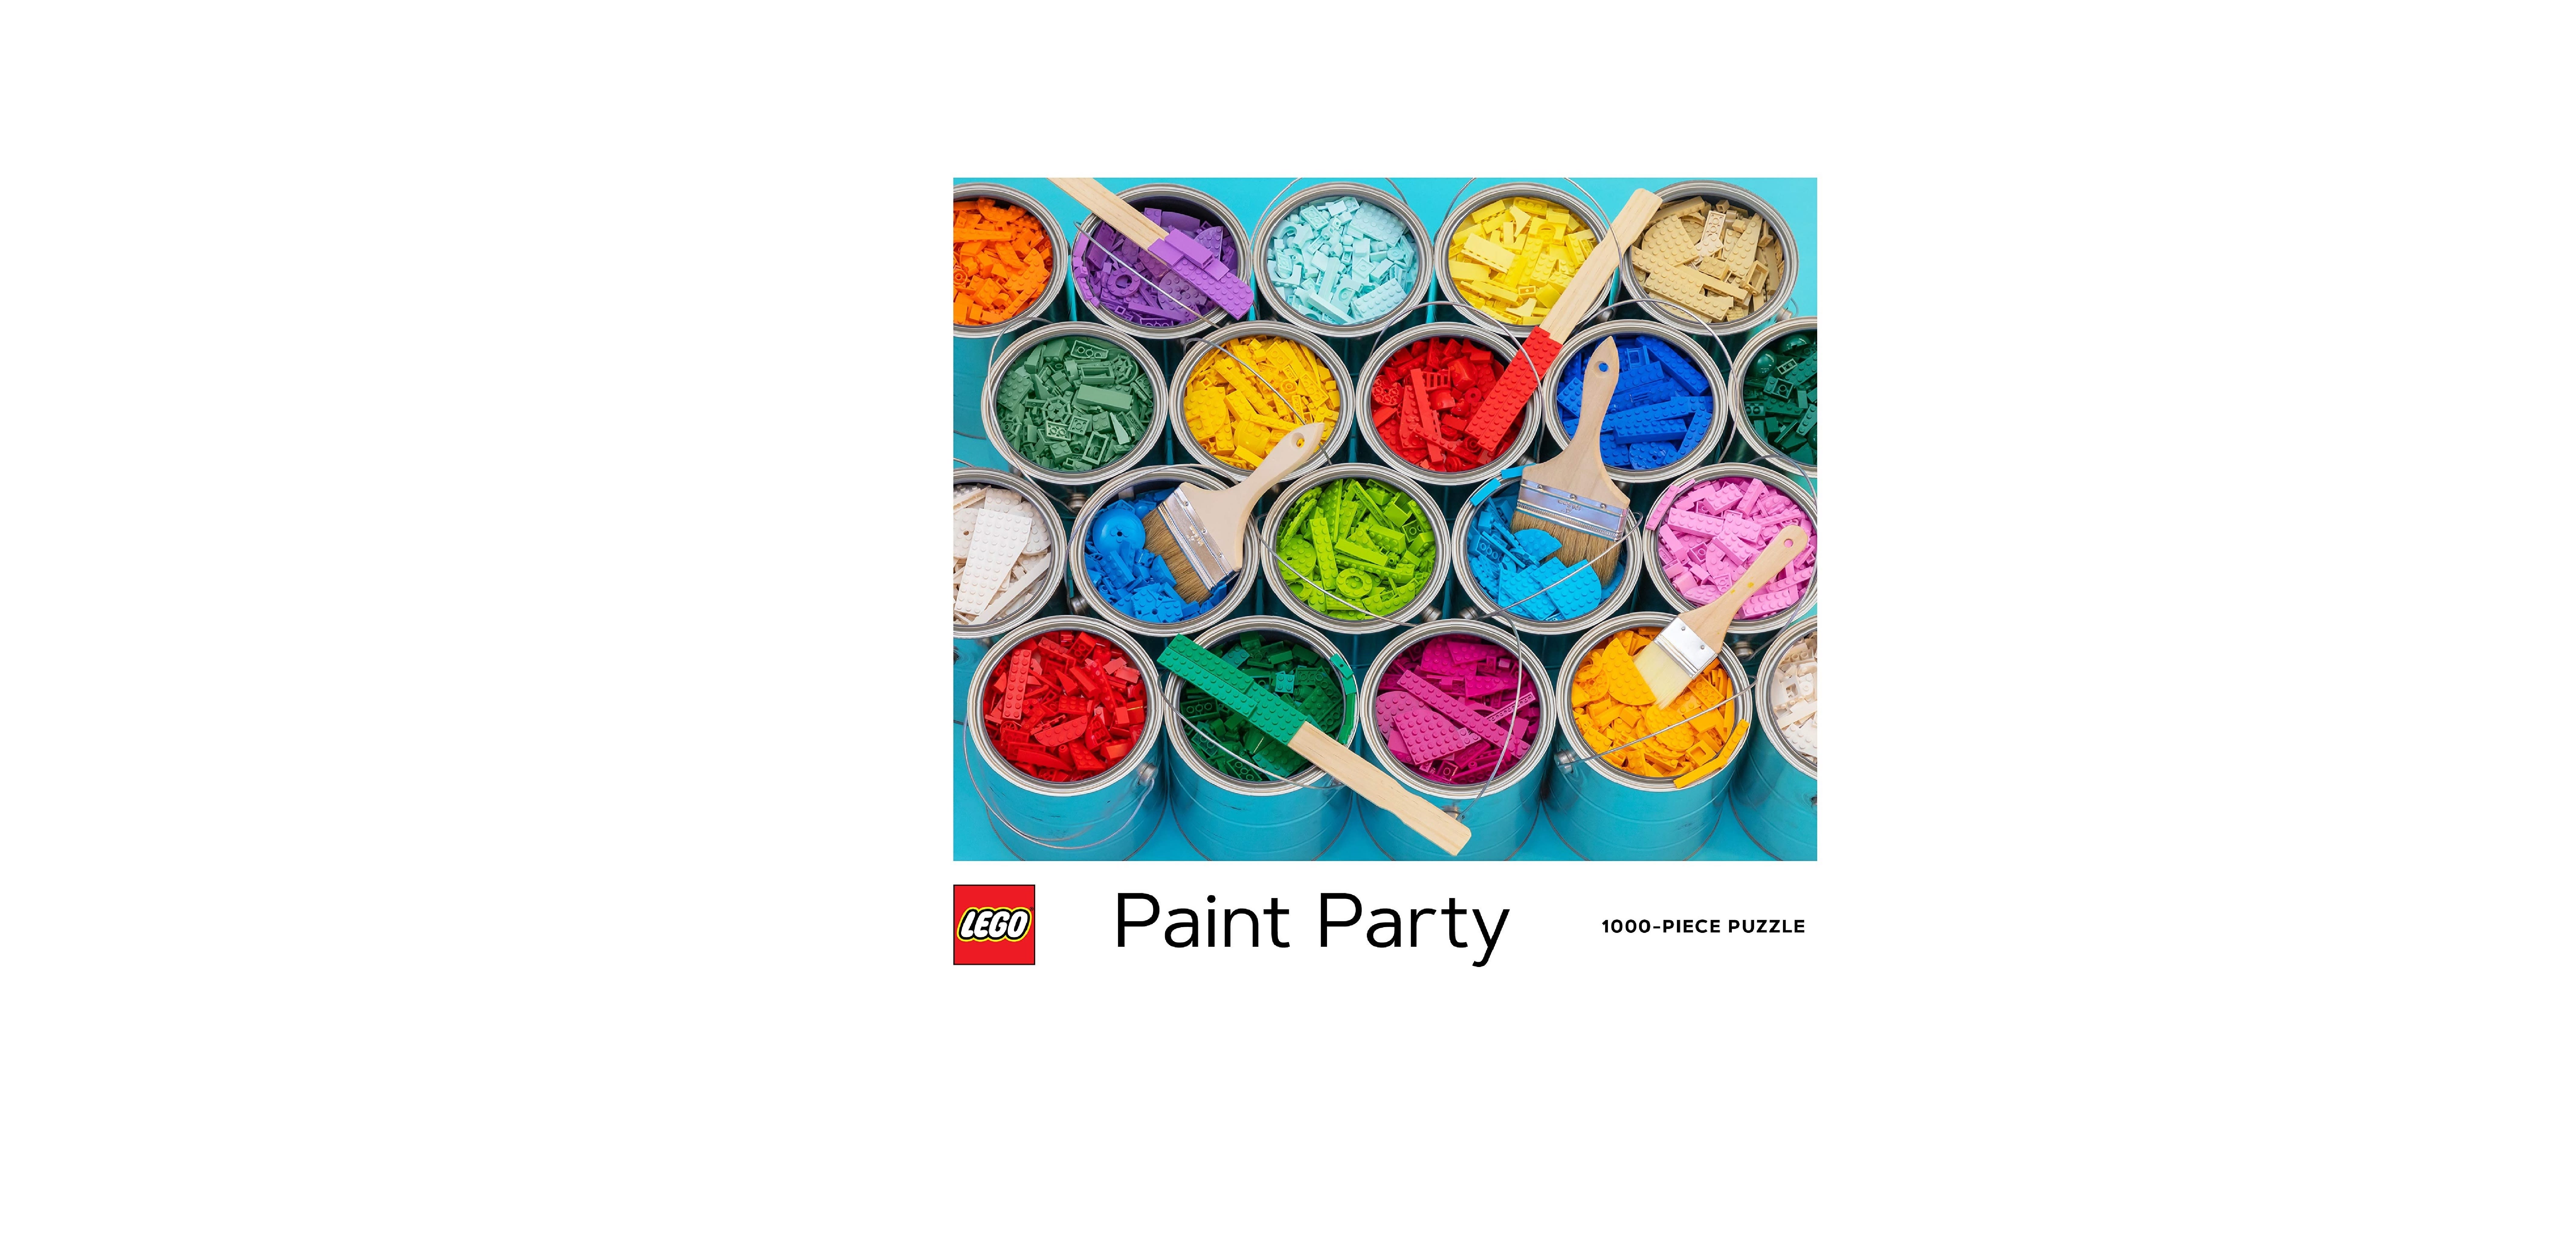 LEGO Paint Party 1000 Pieces Puzzle, Lego Puzzle 